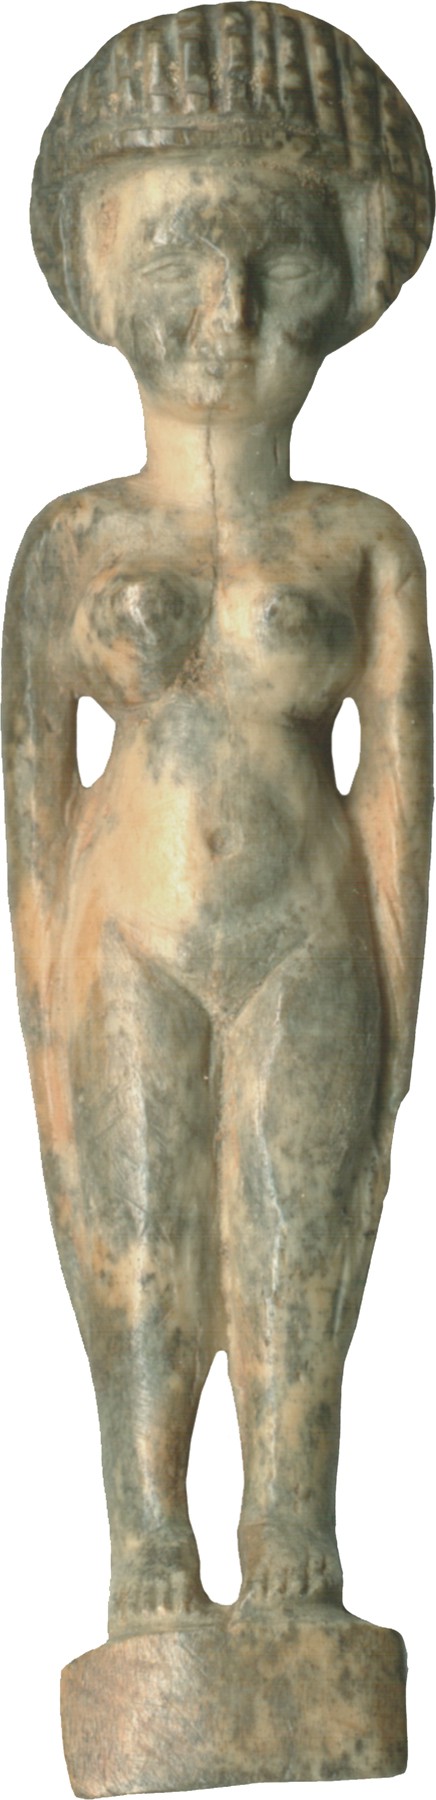 Nude Female Figure